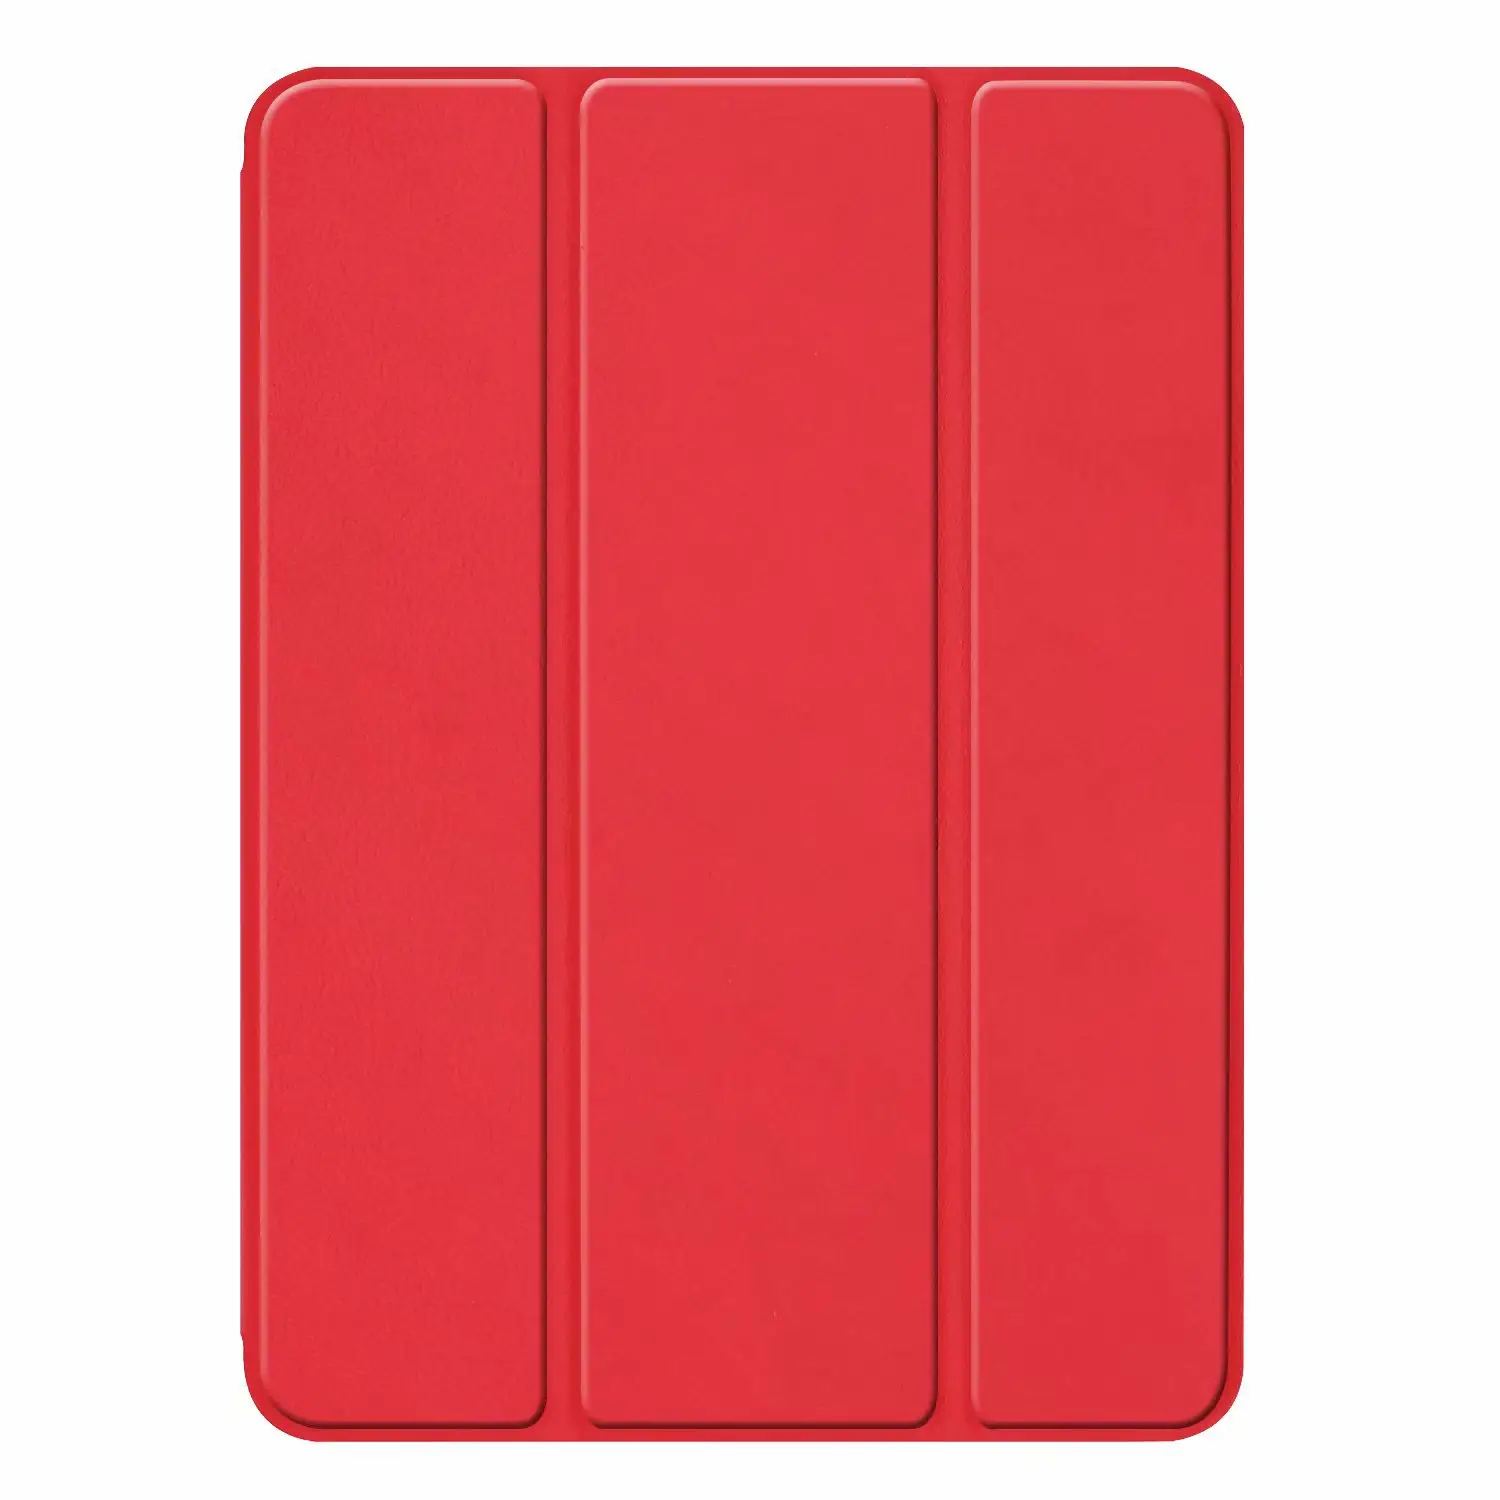 Harga pabrik warna Solid 3 lipat Slot pena kustom casing Tablet berdiri sarung lunak untuk Tablet Ipad Mini 5